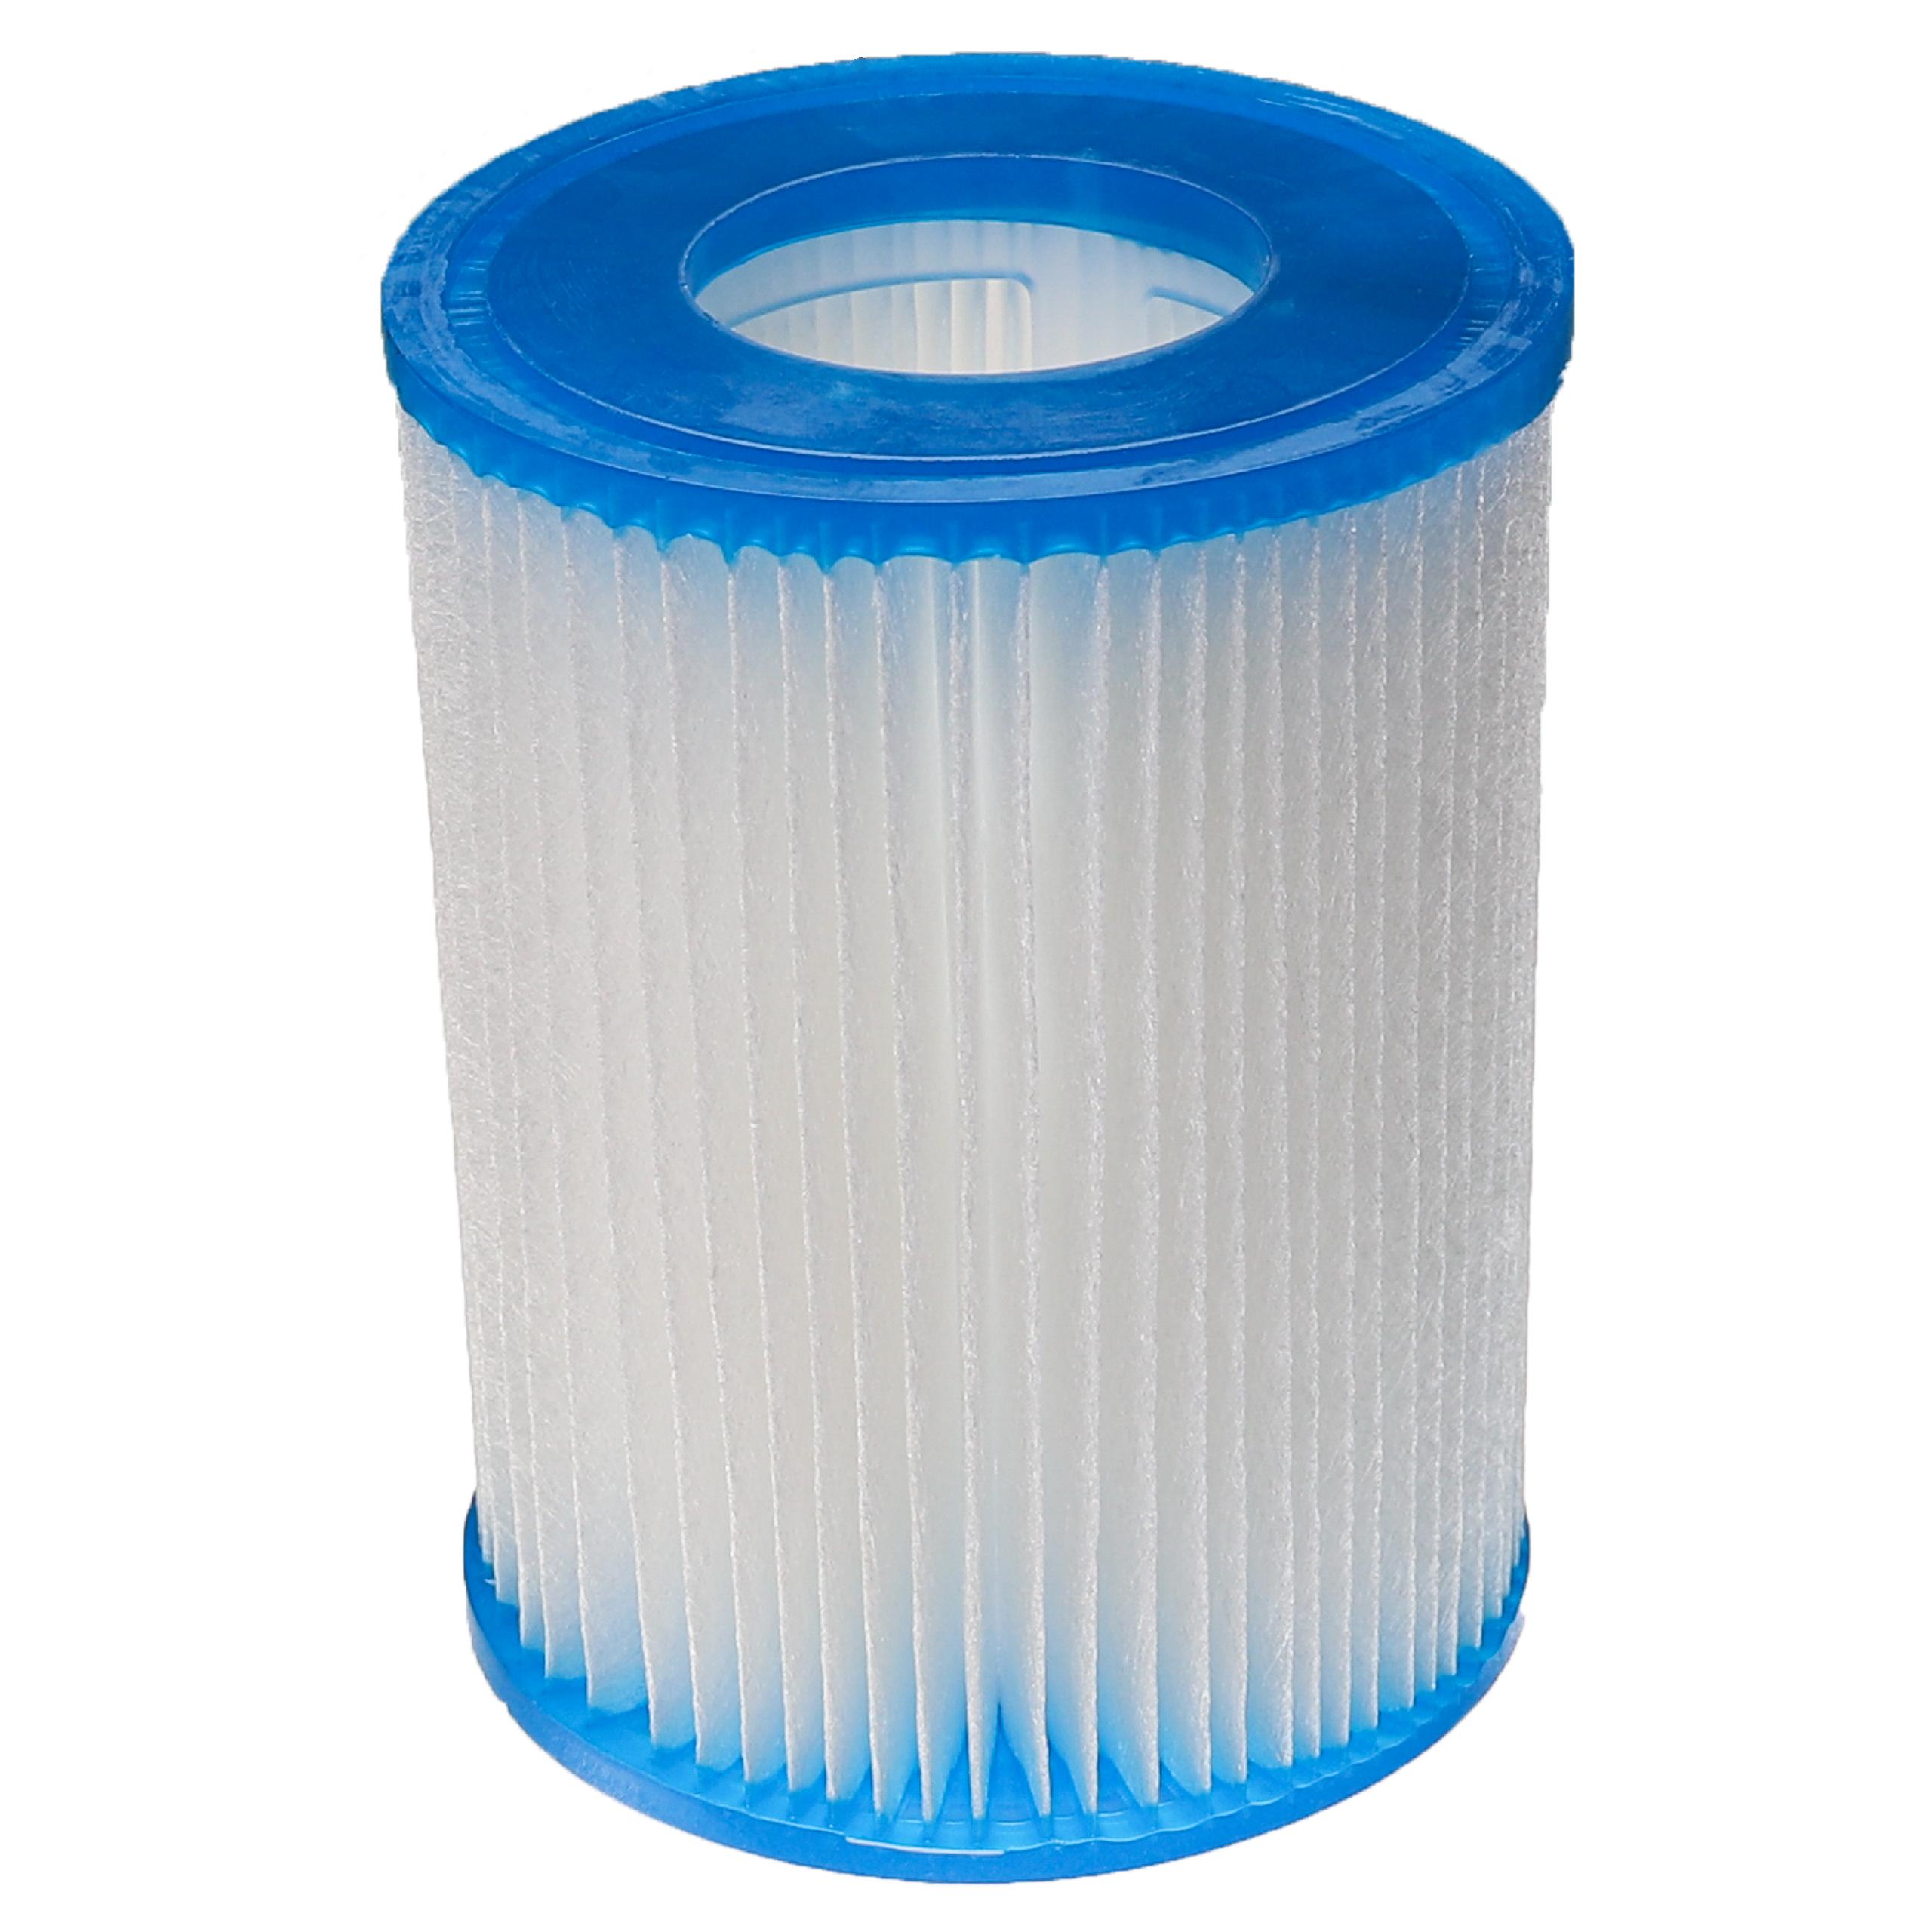 Wasserfilter als Ersatz für Bestway FD2137, Typ II für Bestway Swimmingpool & Filterpumpe - Filterkartusche